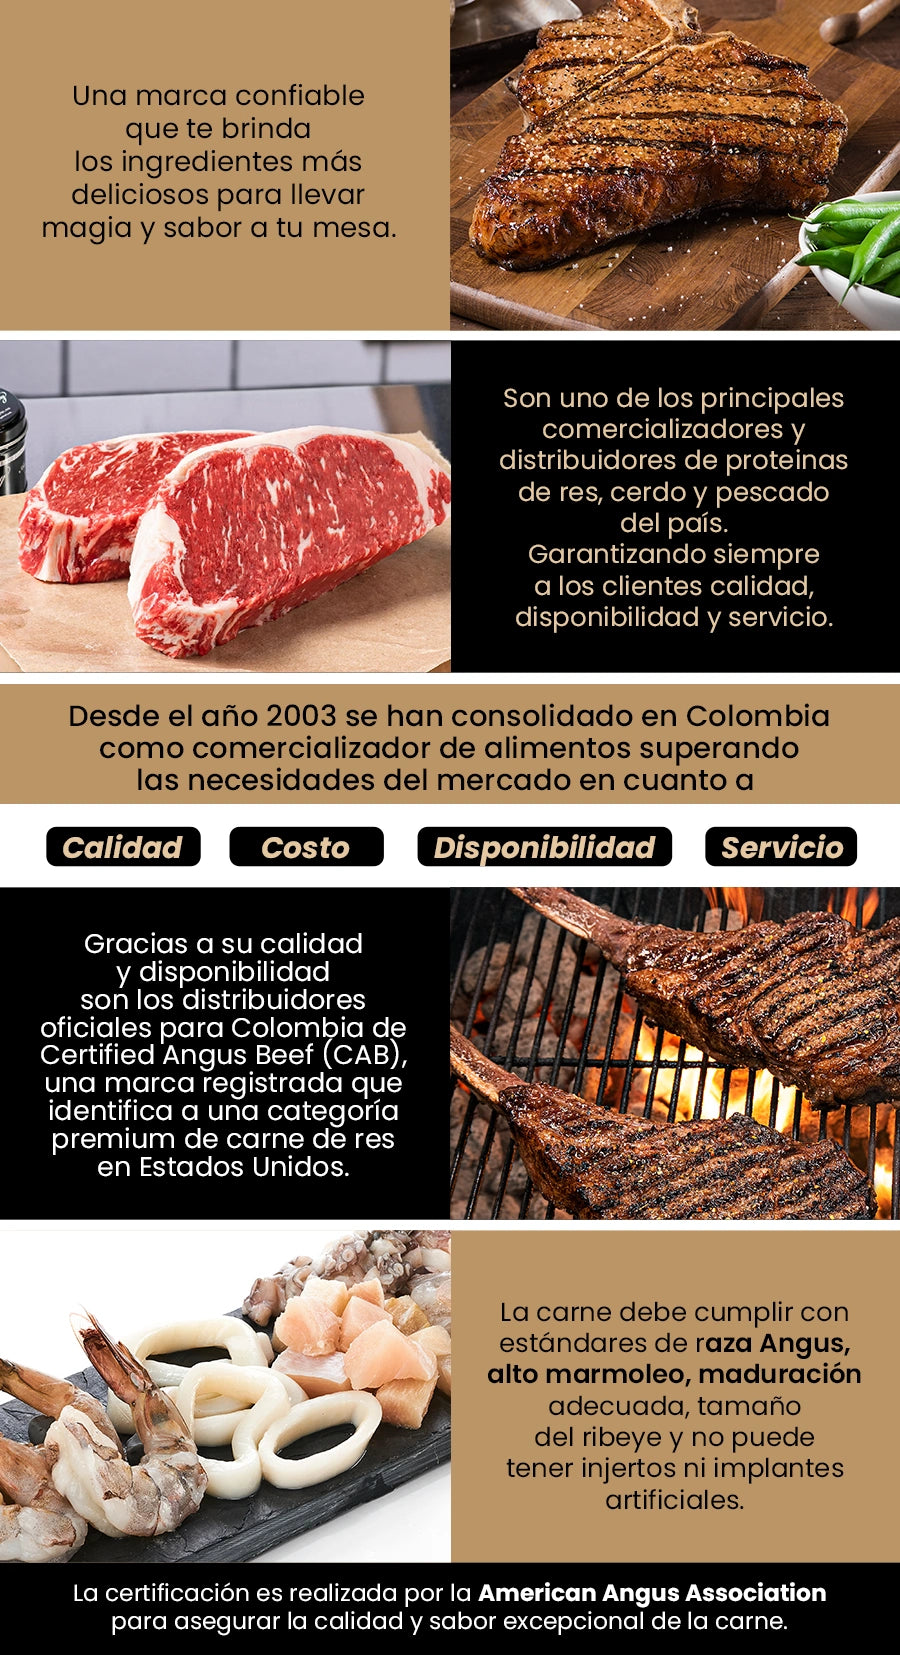 Conocer la historia y valores de Atlantic Food Services y la historia de Certified Angus Beef en Colombia